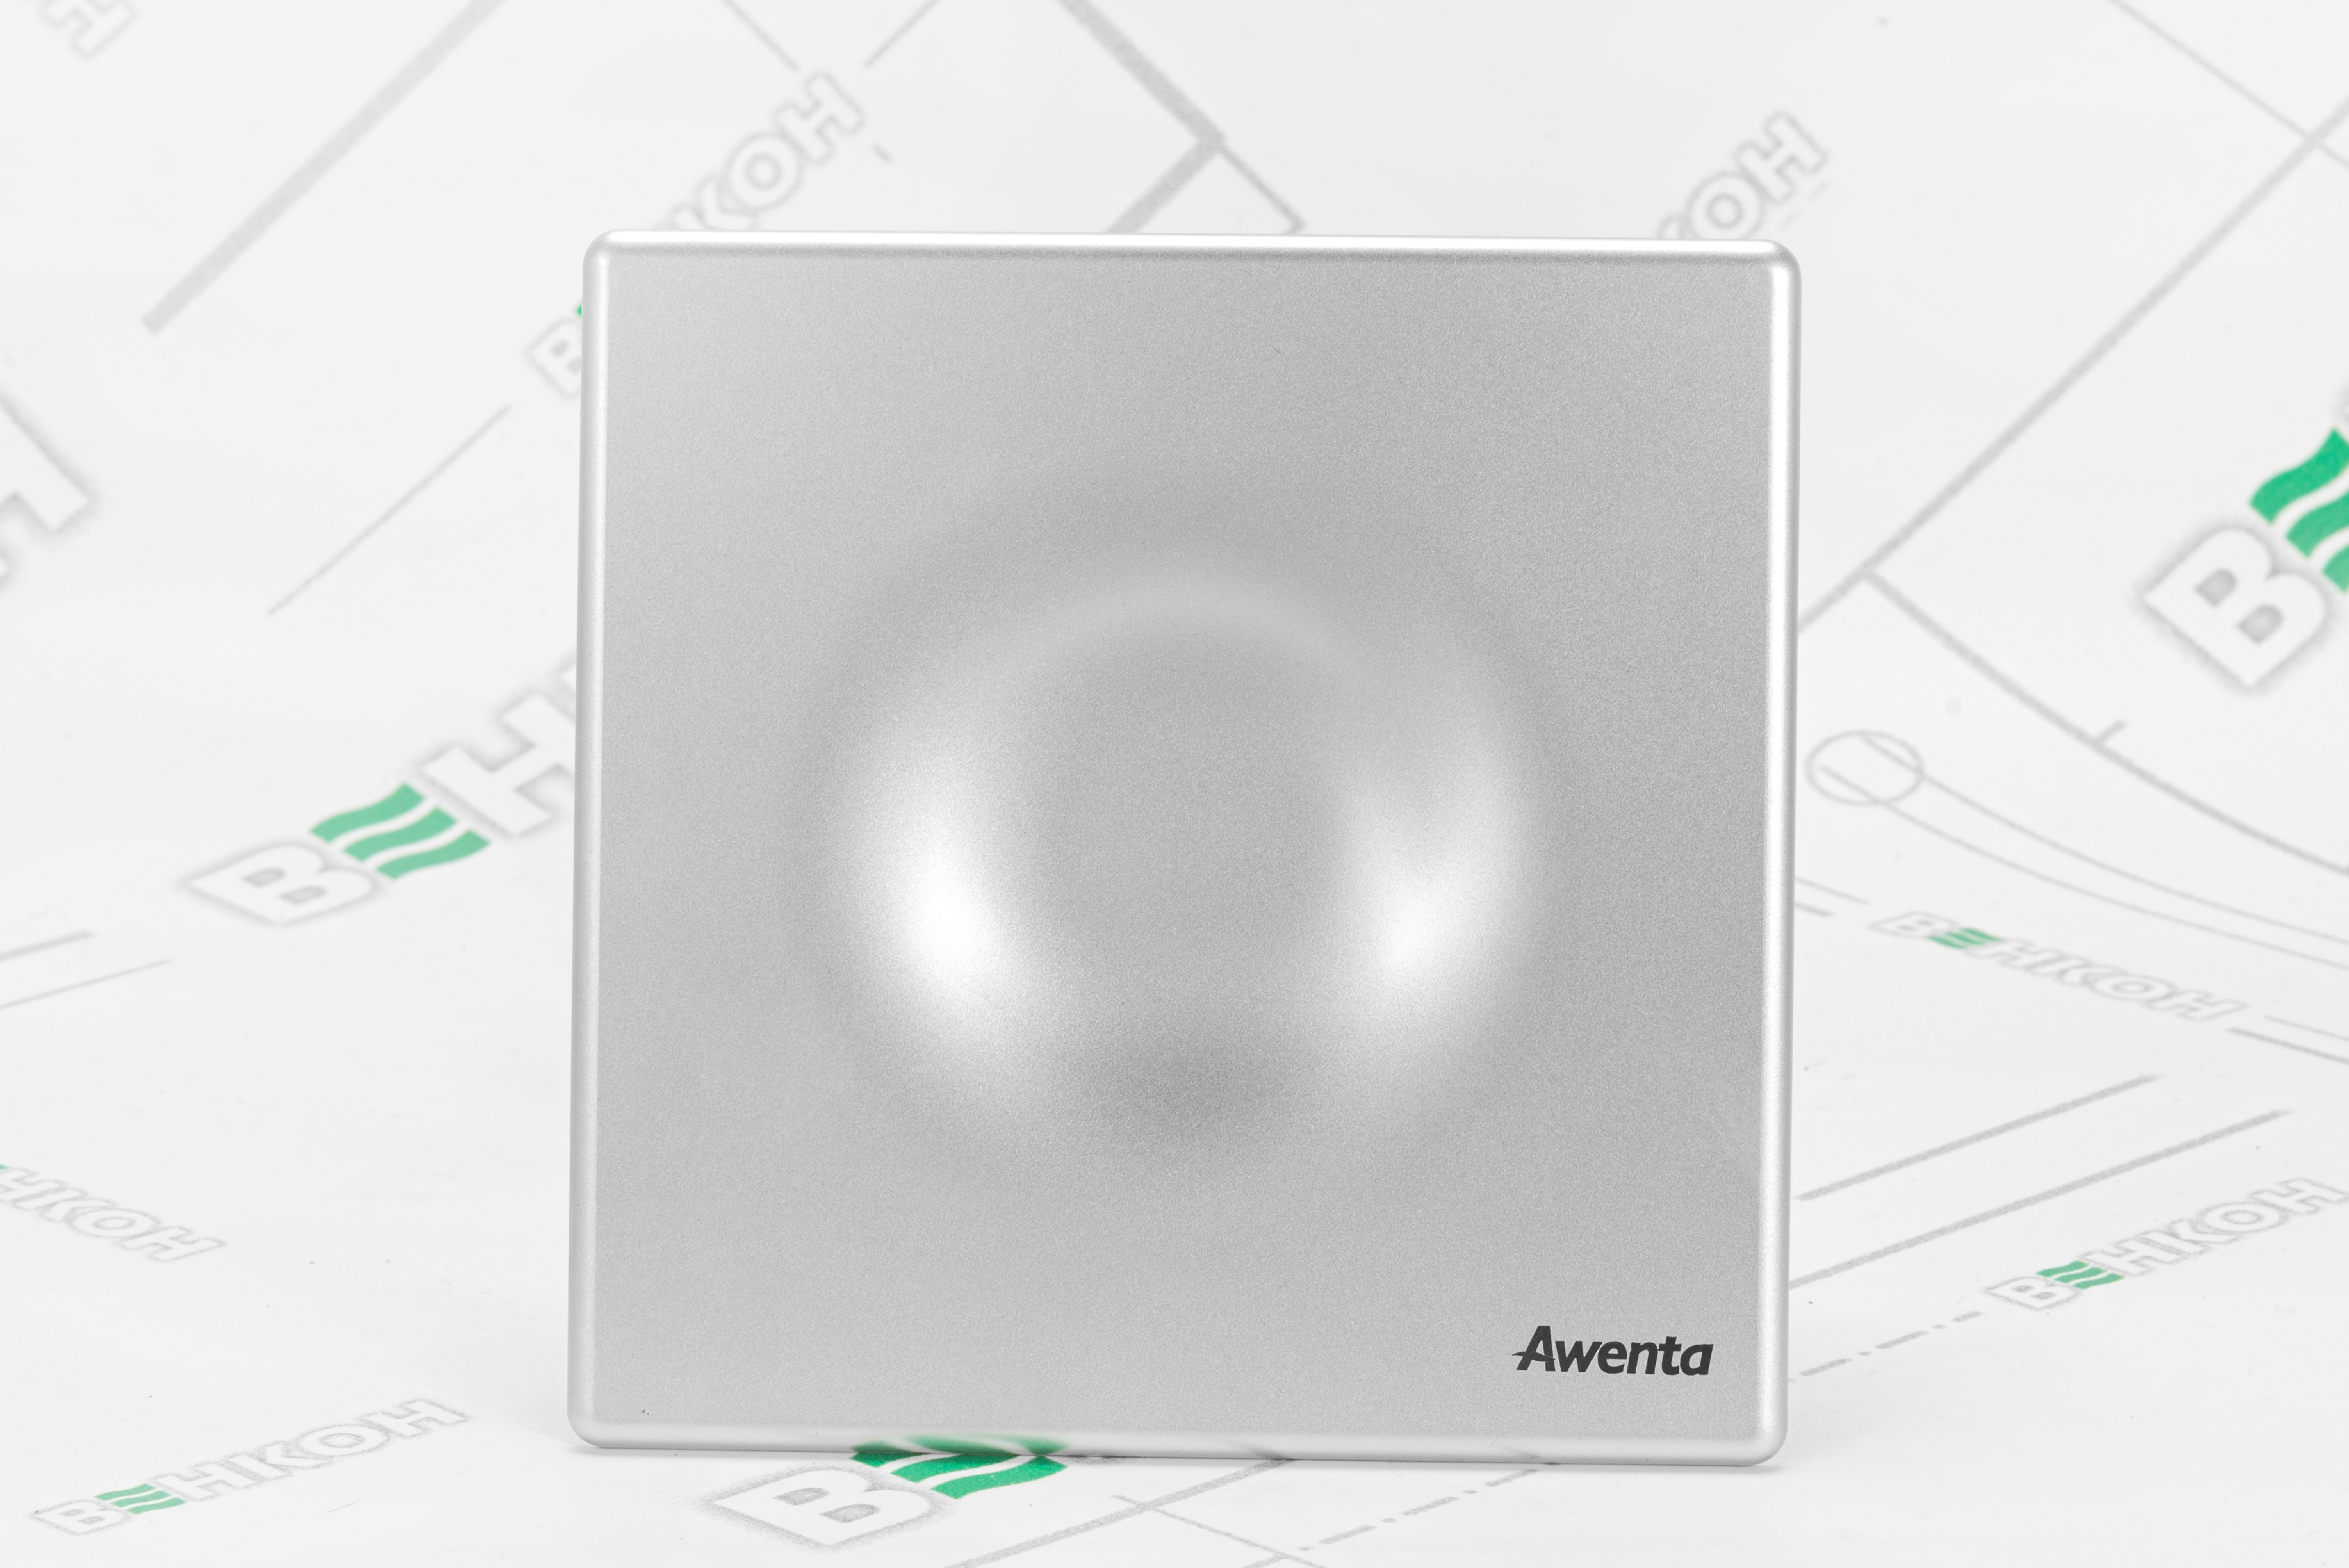 продаємо Awenta System+ Silent KWS100H-POS100 в Україні - фото 4